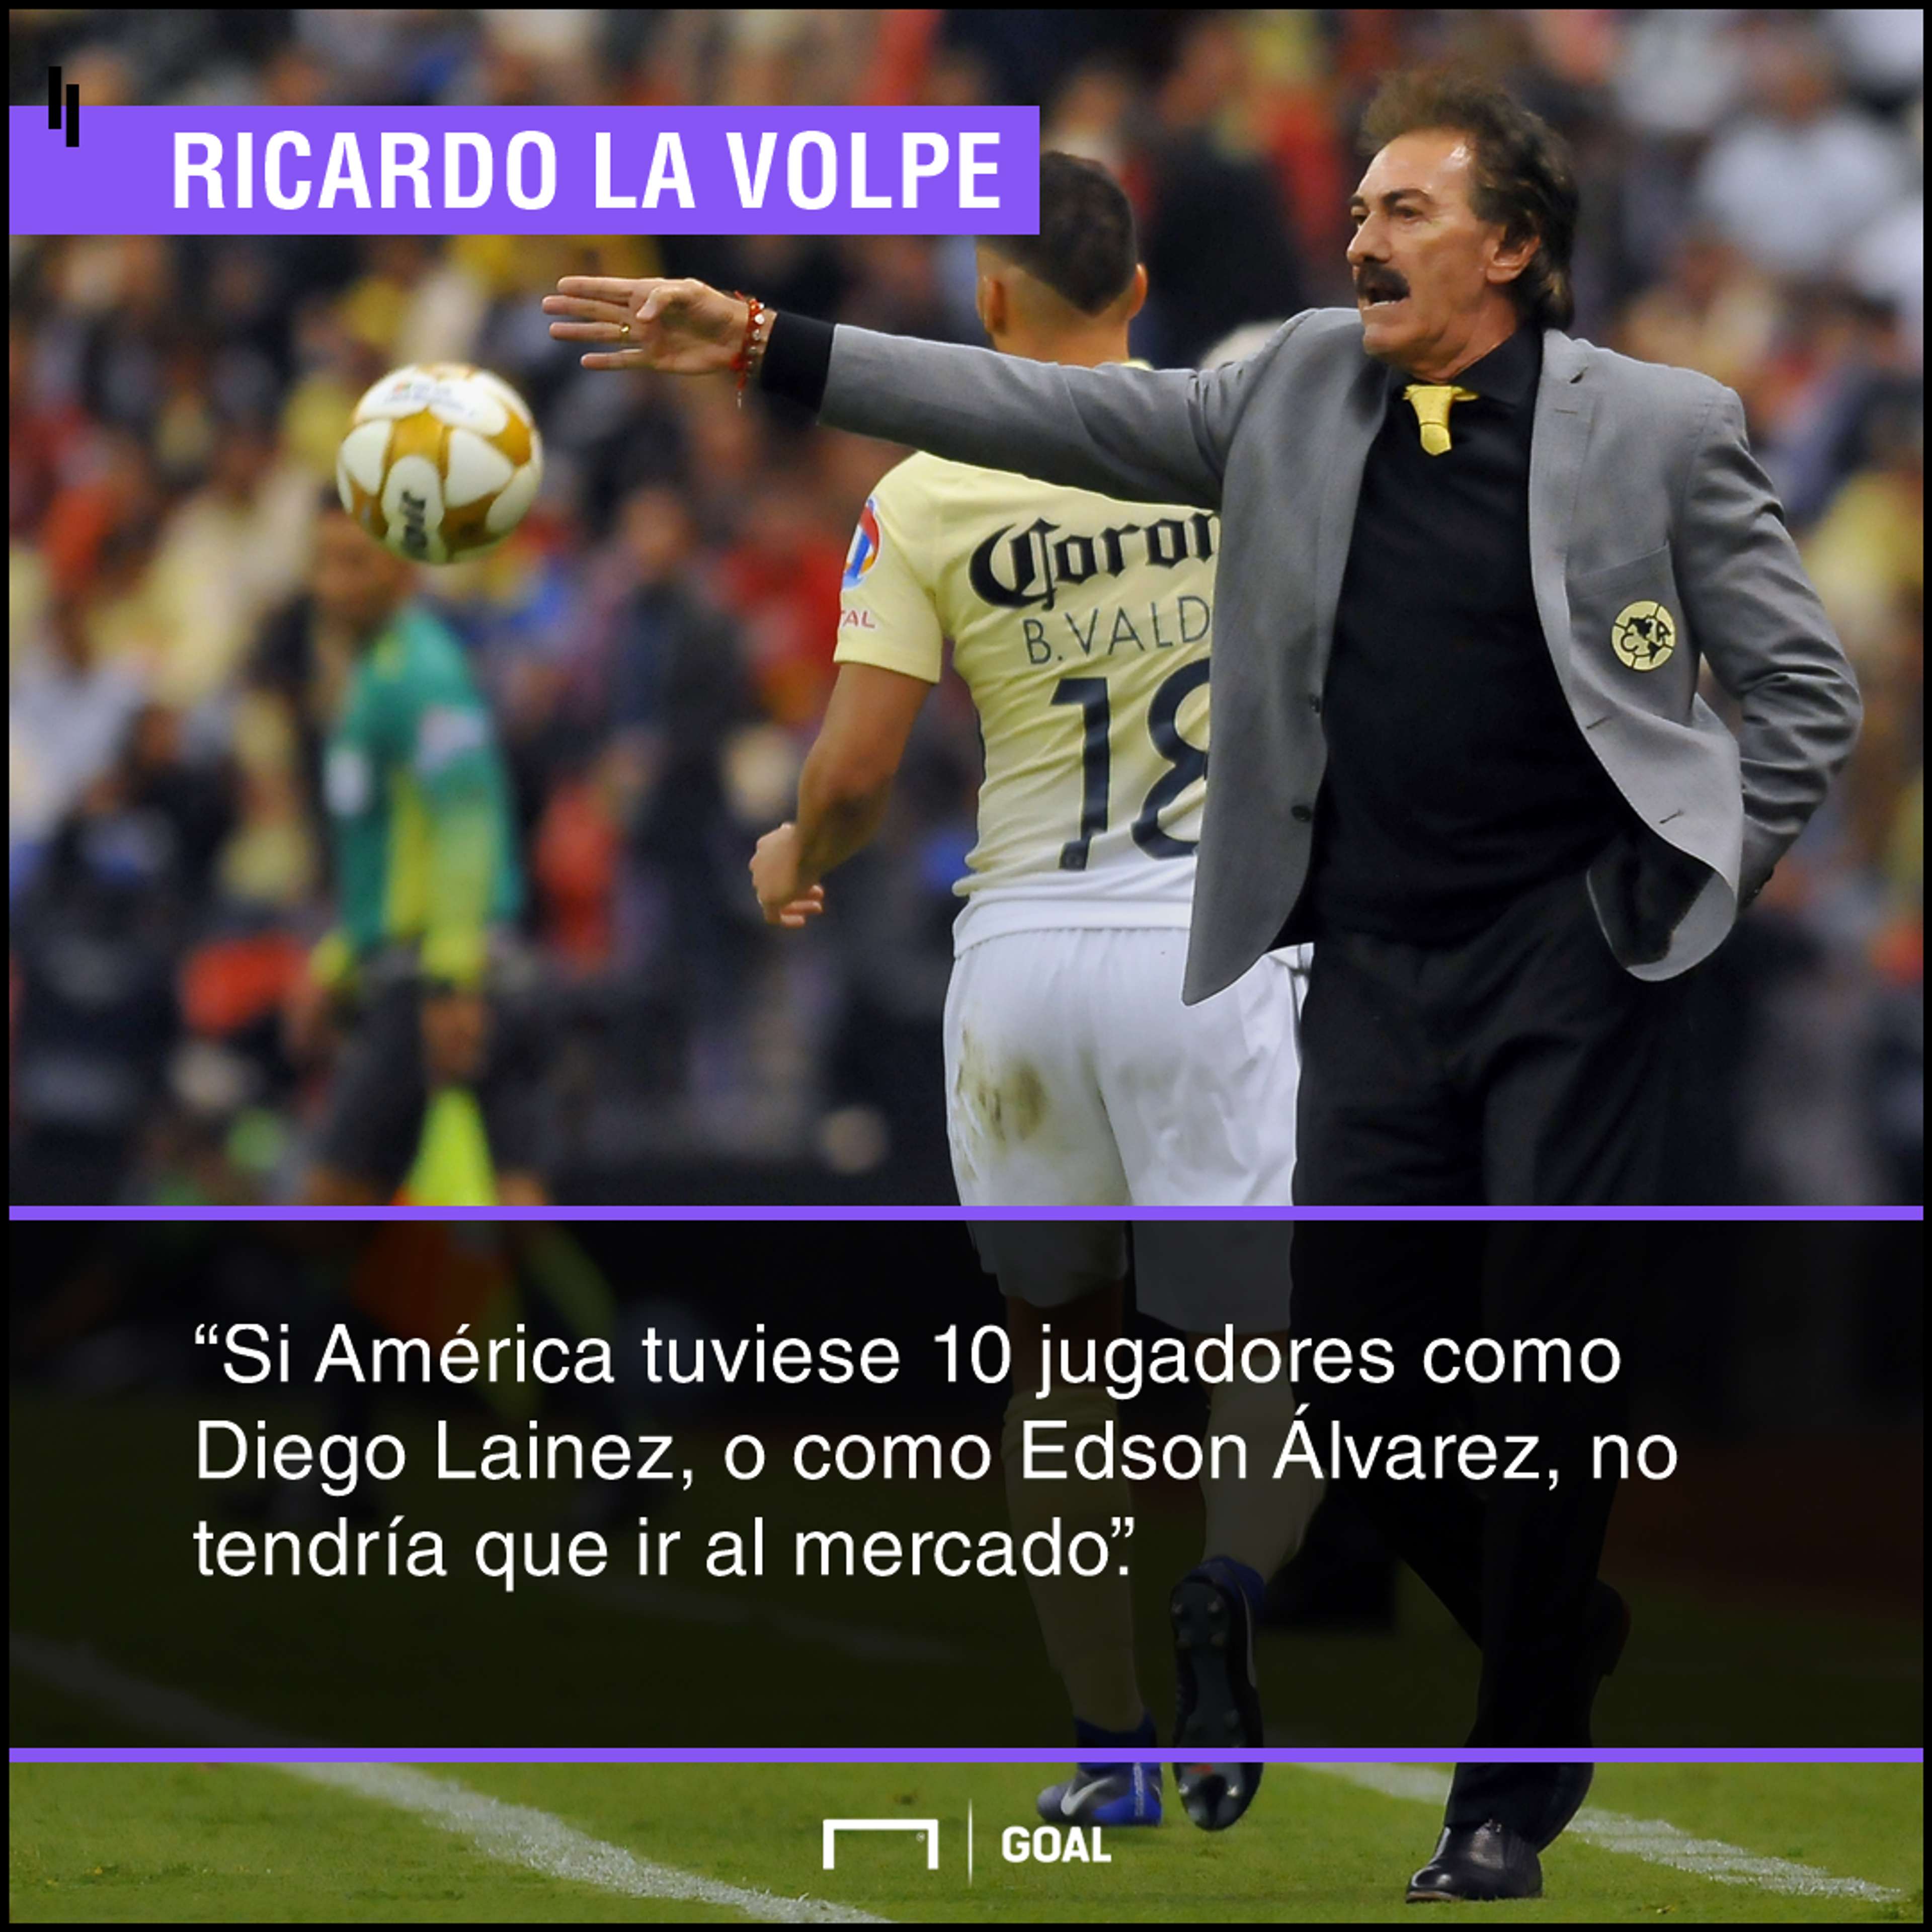 Ricardo La Volpe quote